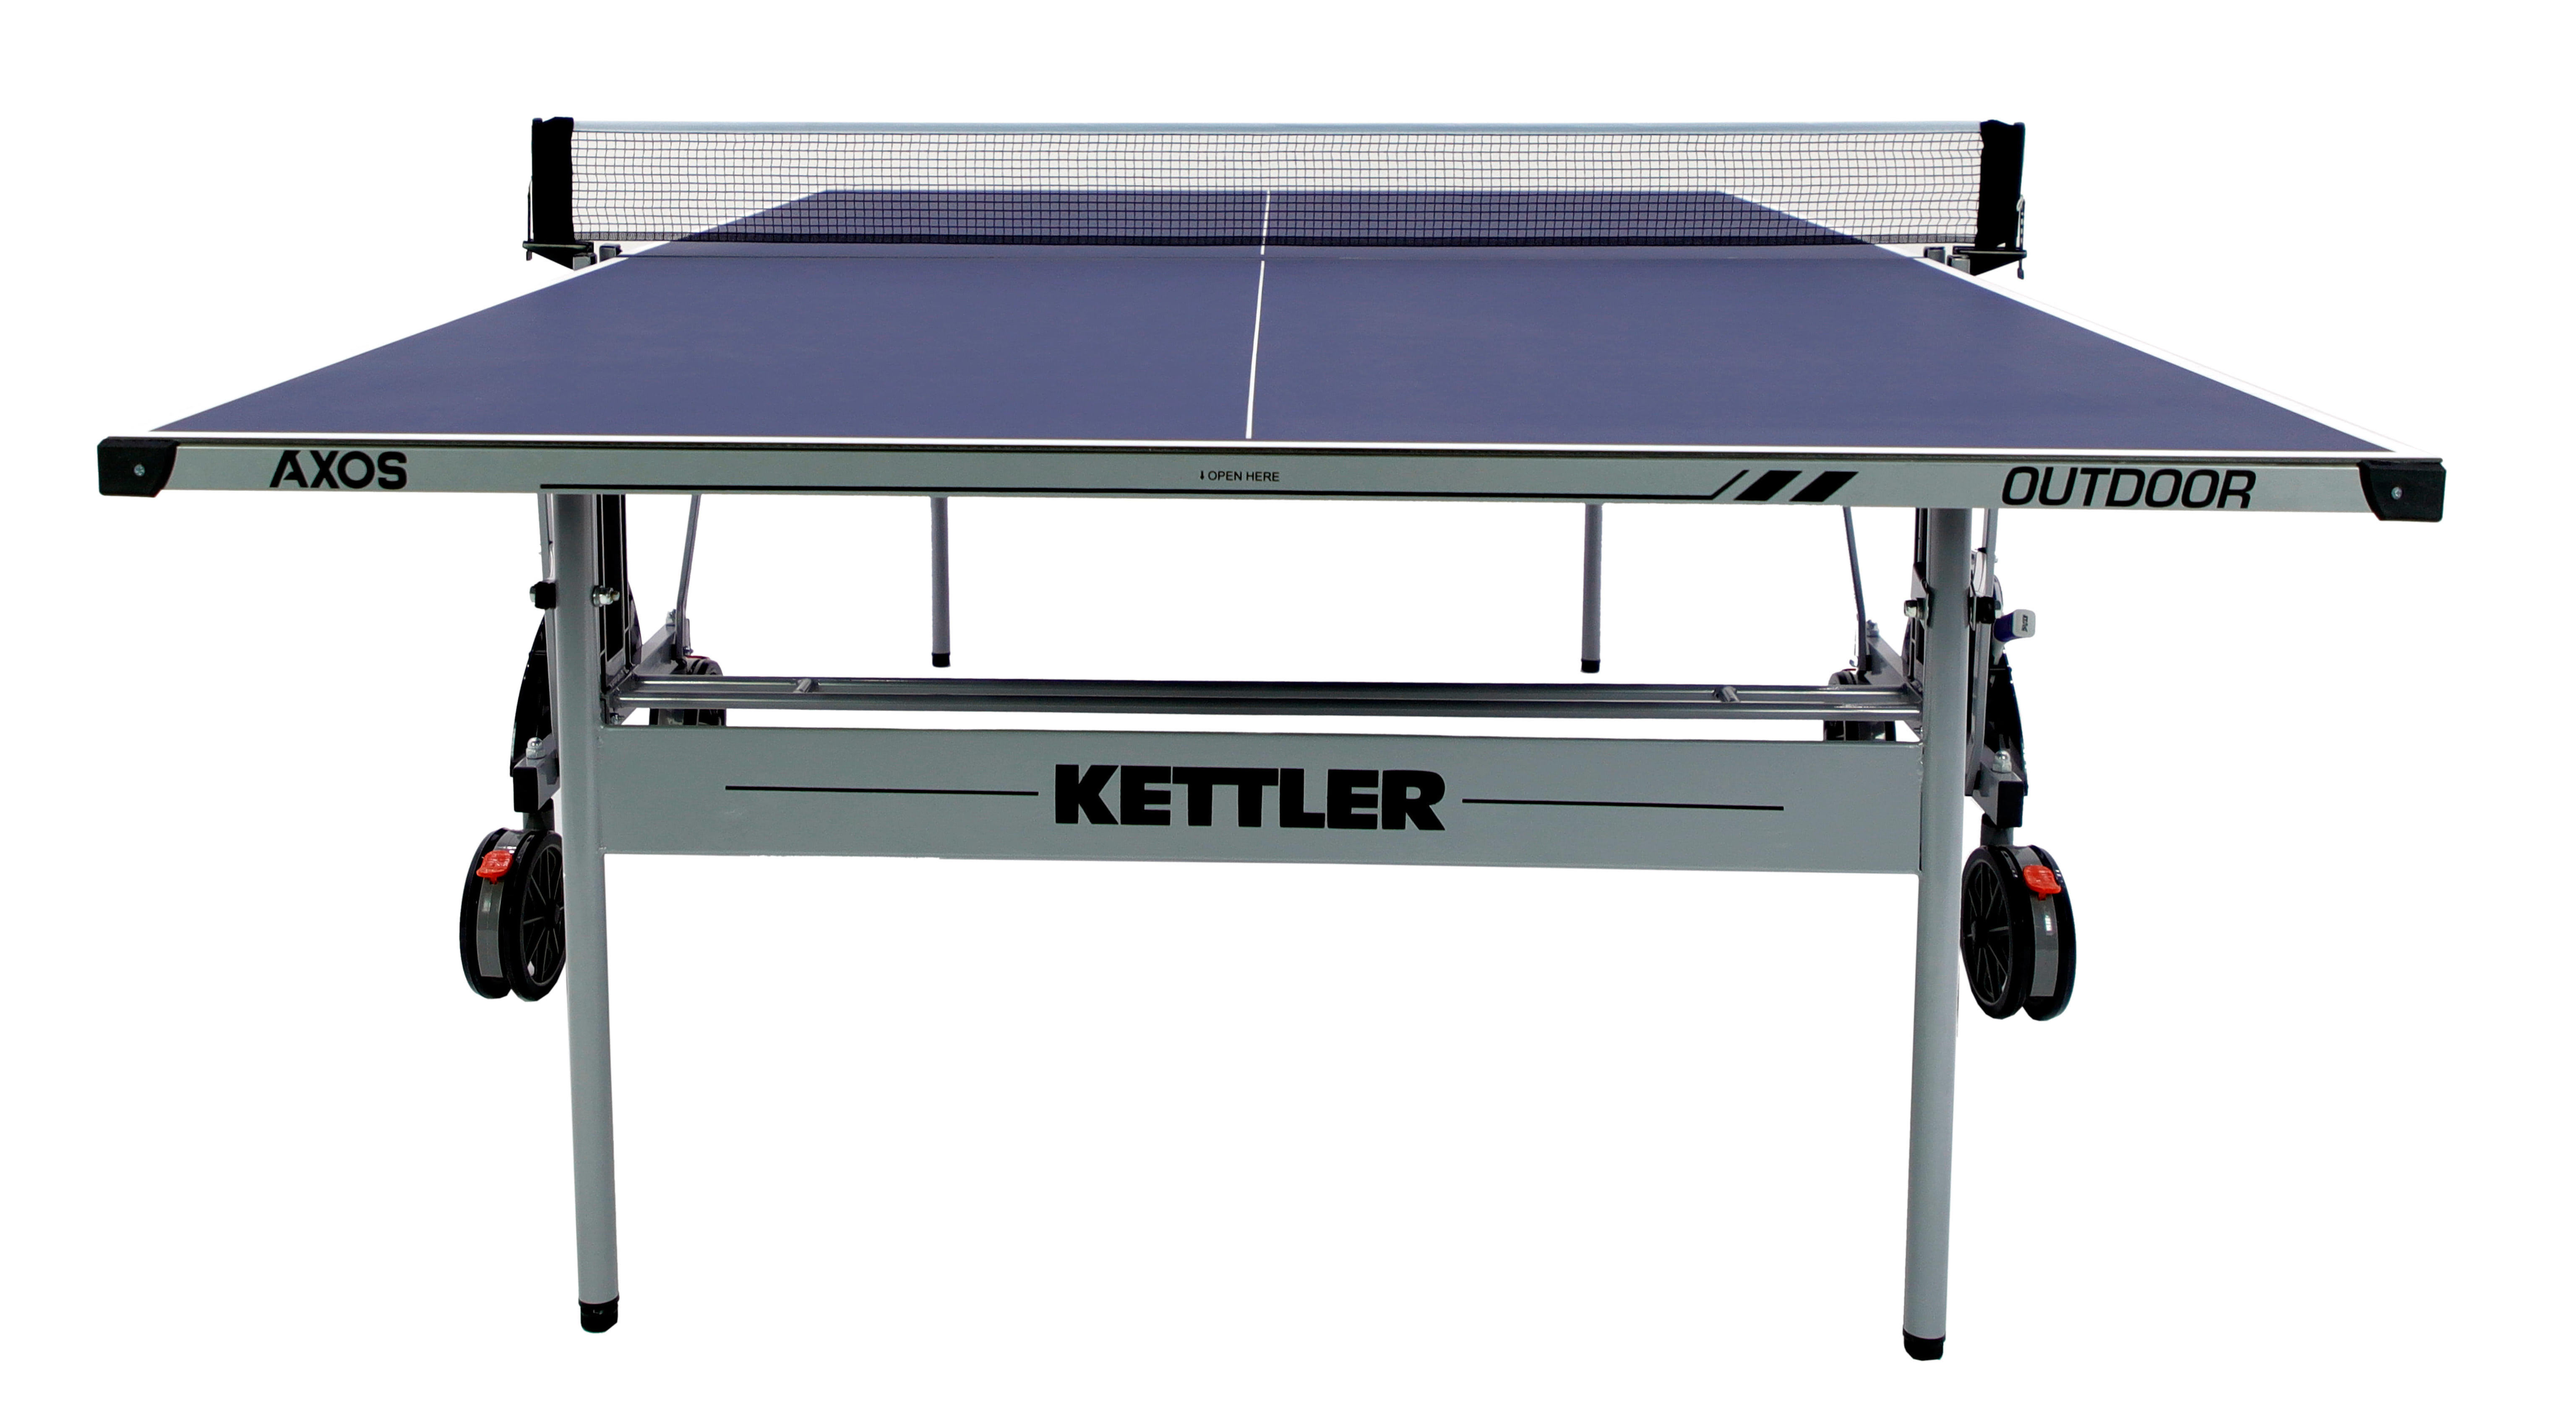 стол для настольного тенниса уличный kettler